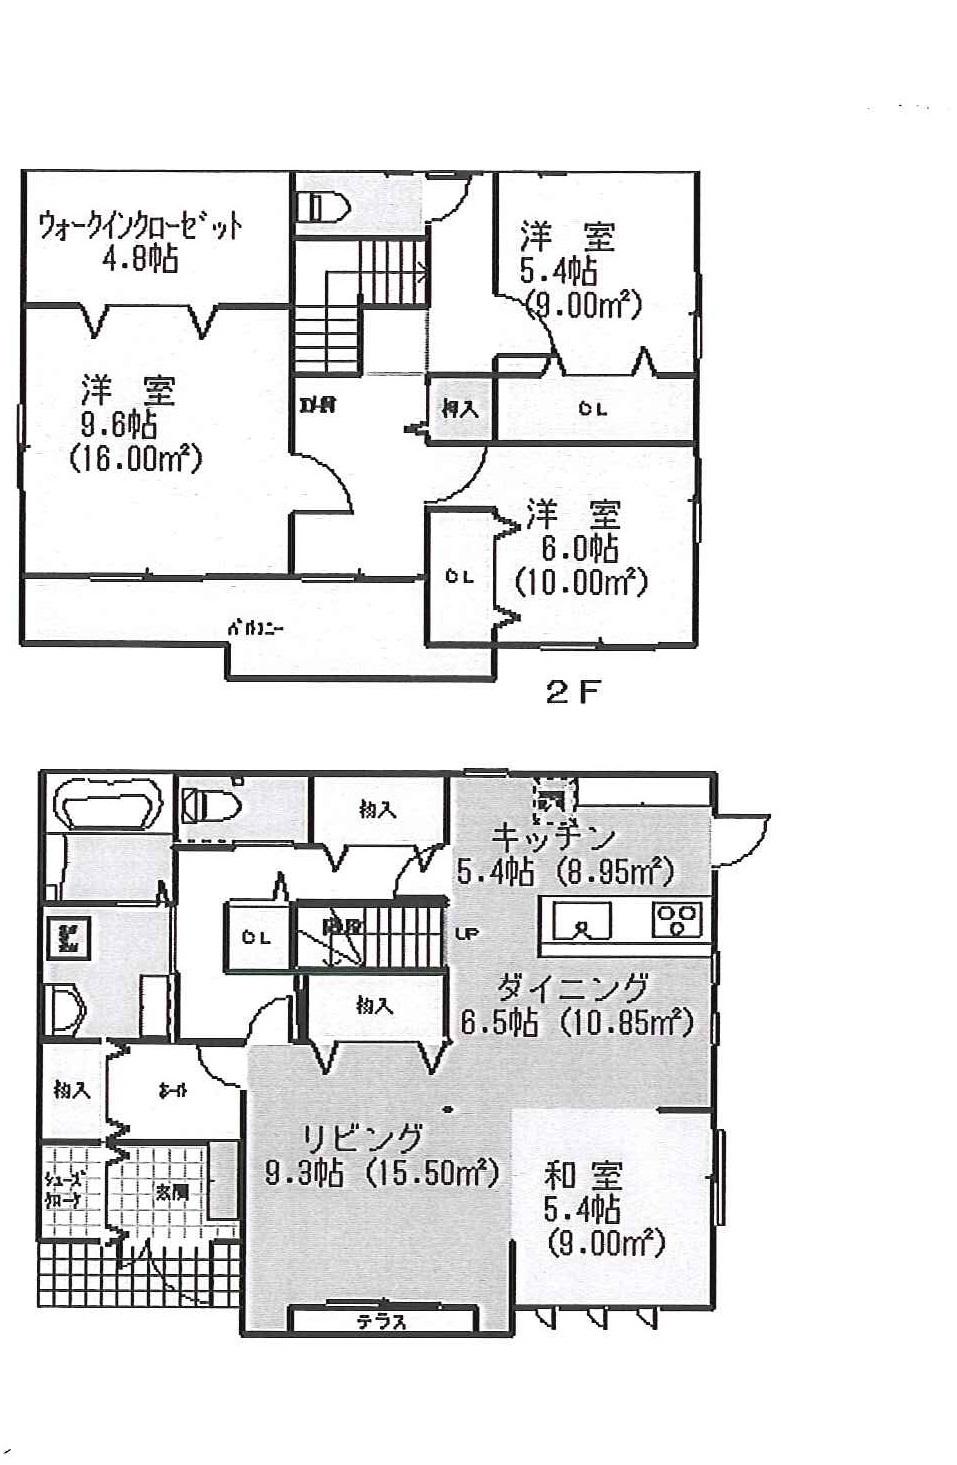 Floor plan. 27.5 million yen, 3LDK, Land area 261.46 sq m , Building area 141.5 sq m